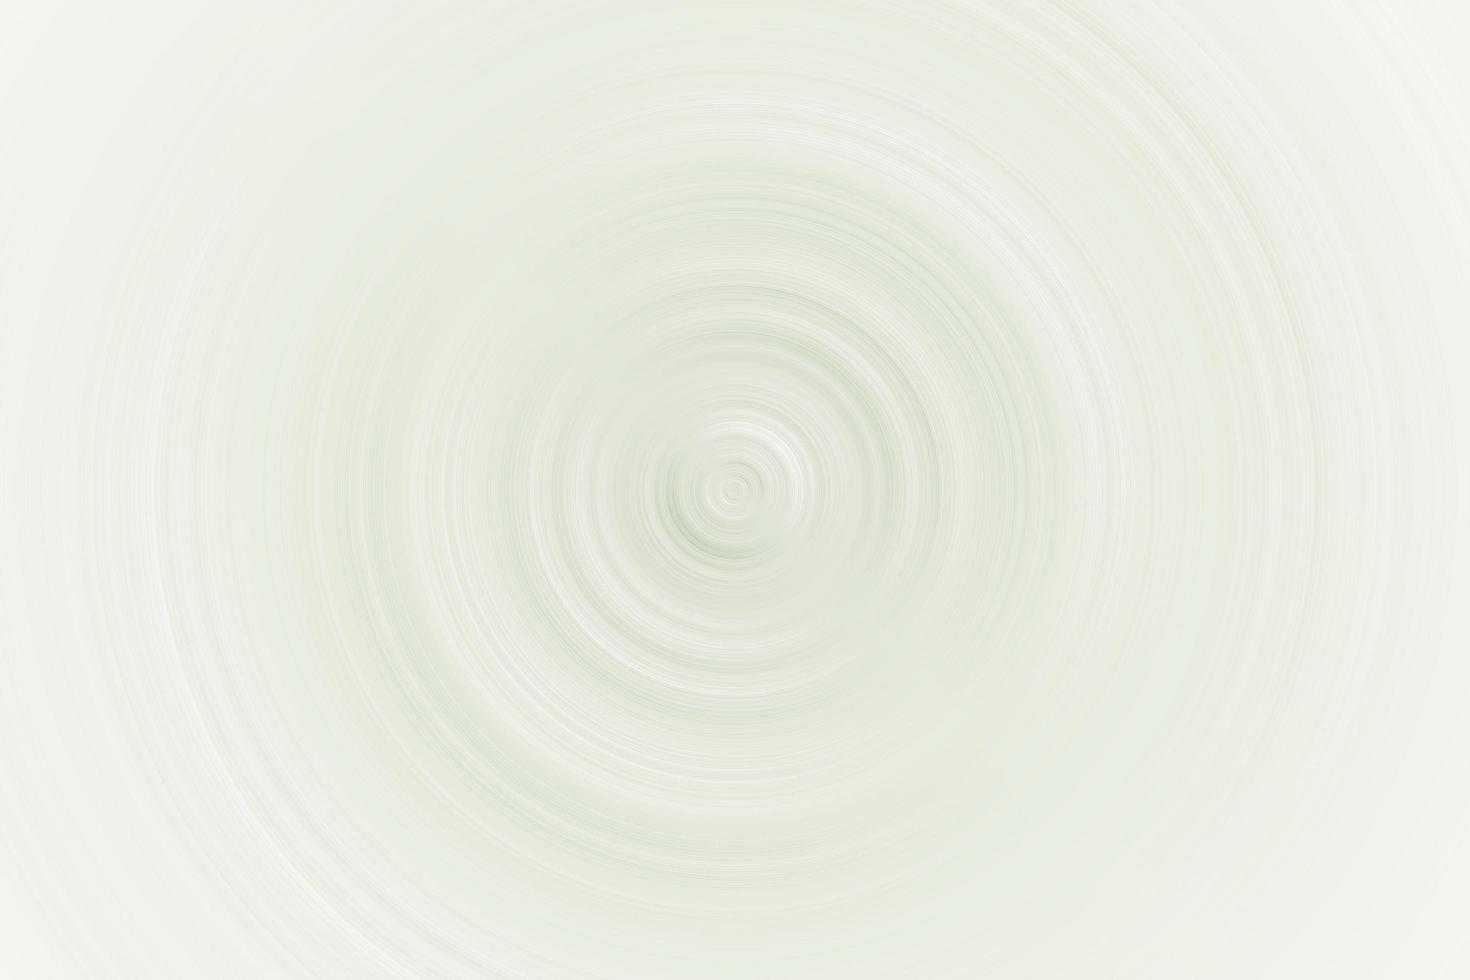 vórtice verde claro abstracto sobre fondo blanco, textura de fondo suave foto